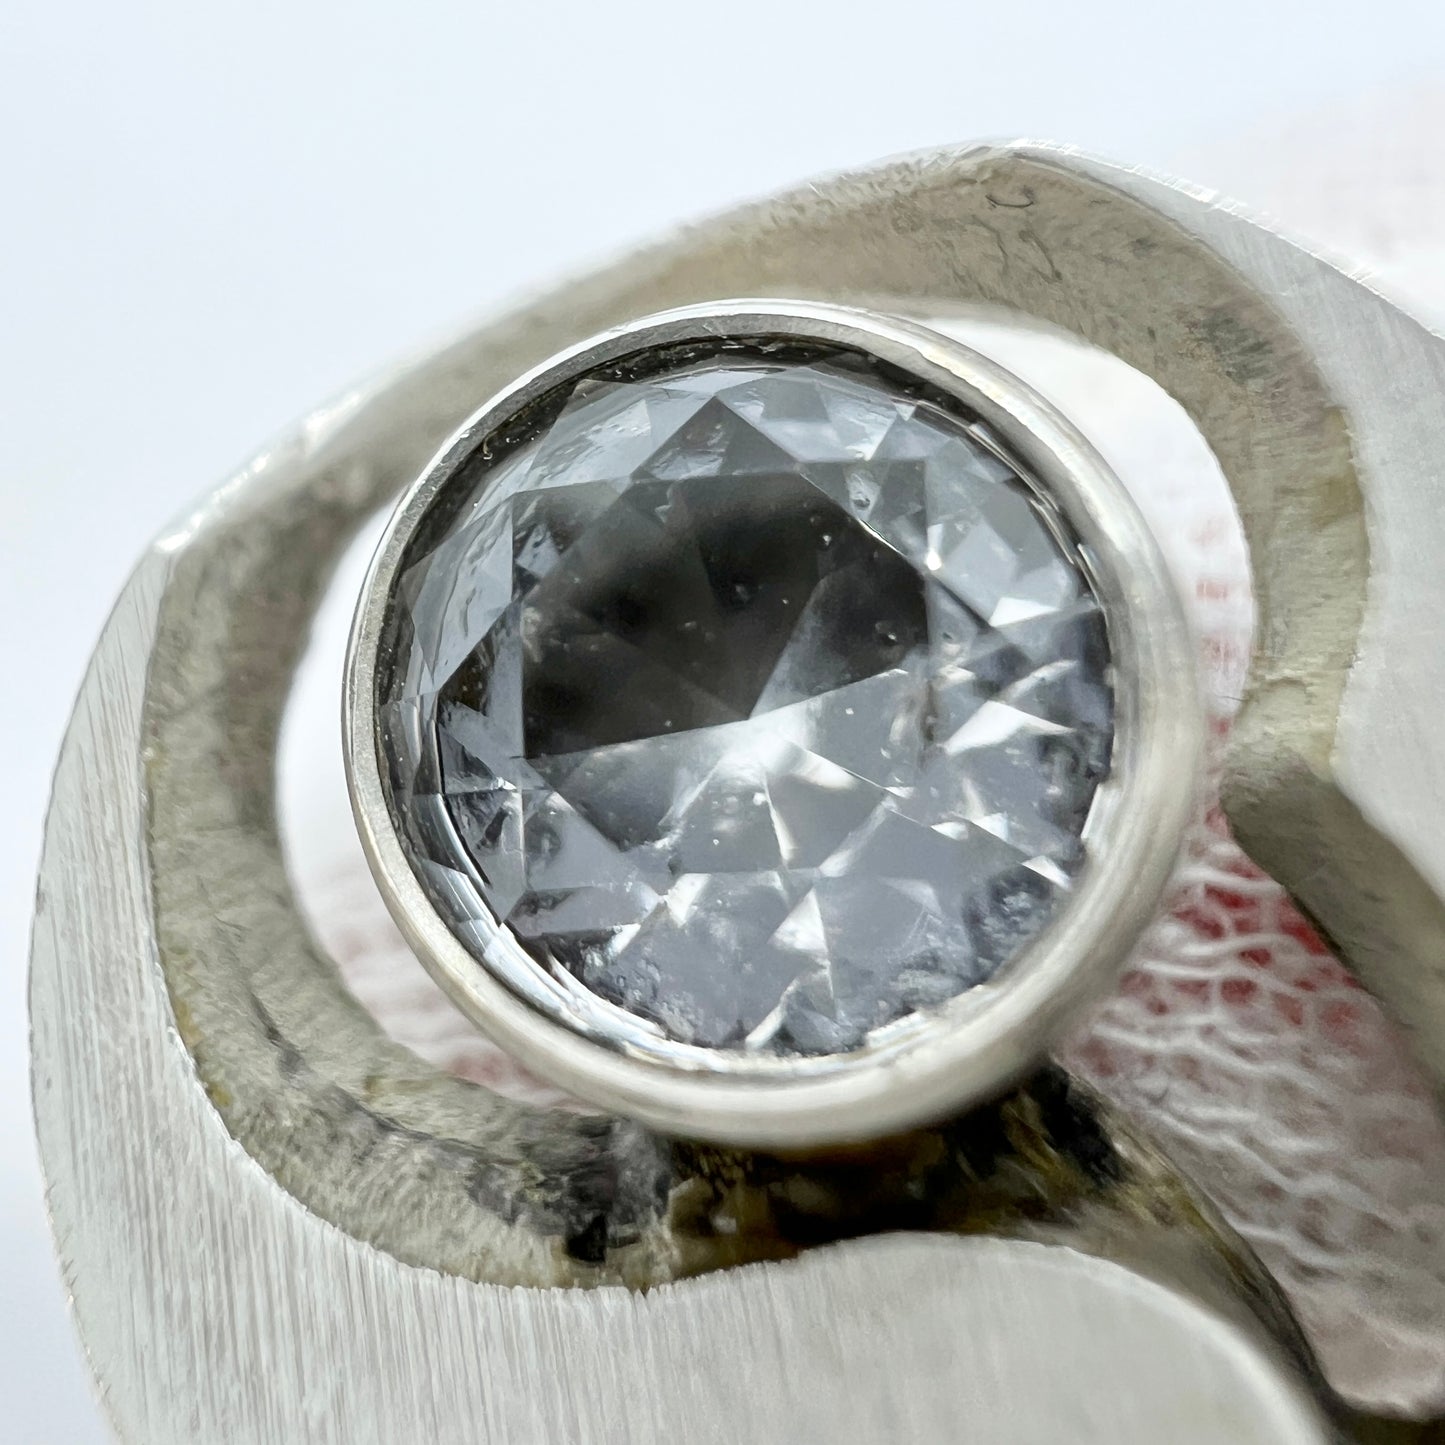 Karl Laine for Sten & Laine, Finland 1977. Vintage Sterling Silver Rock Crystal Ring.